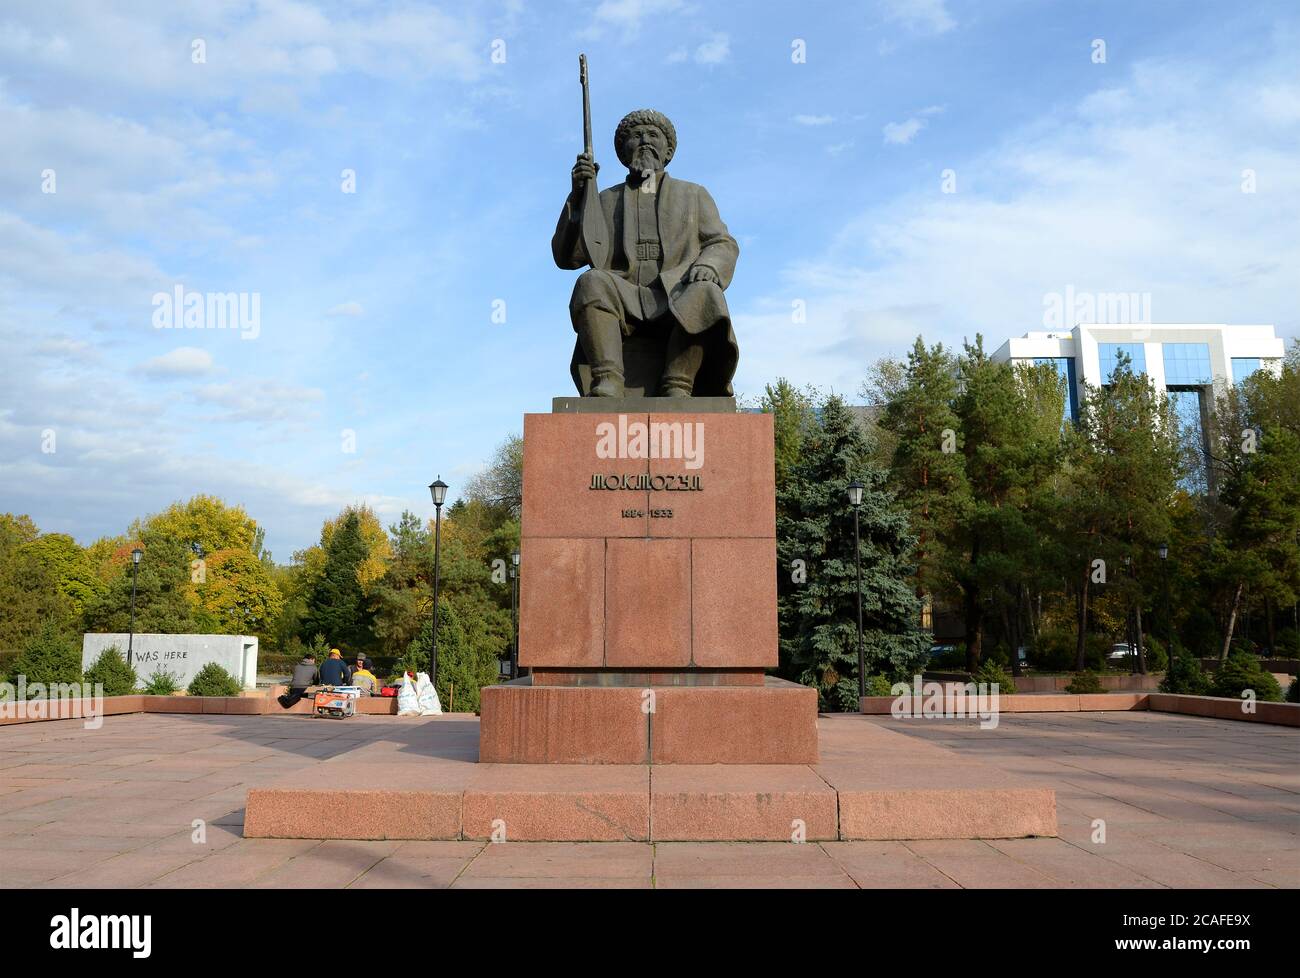 Statue de Toktogul Satylganov à Bichkek, Kirghizistan. Célèbres Akyns kirghizes – des poètes et des chanteurs improvisés. Poète et compositeur. Banque D'Images